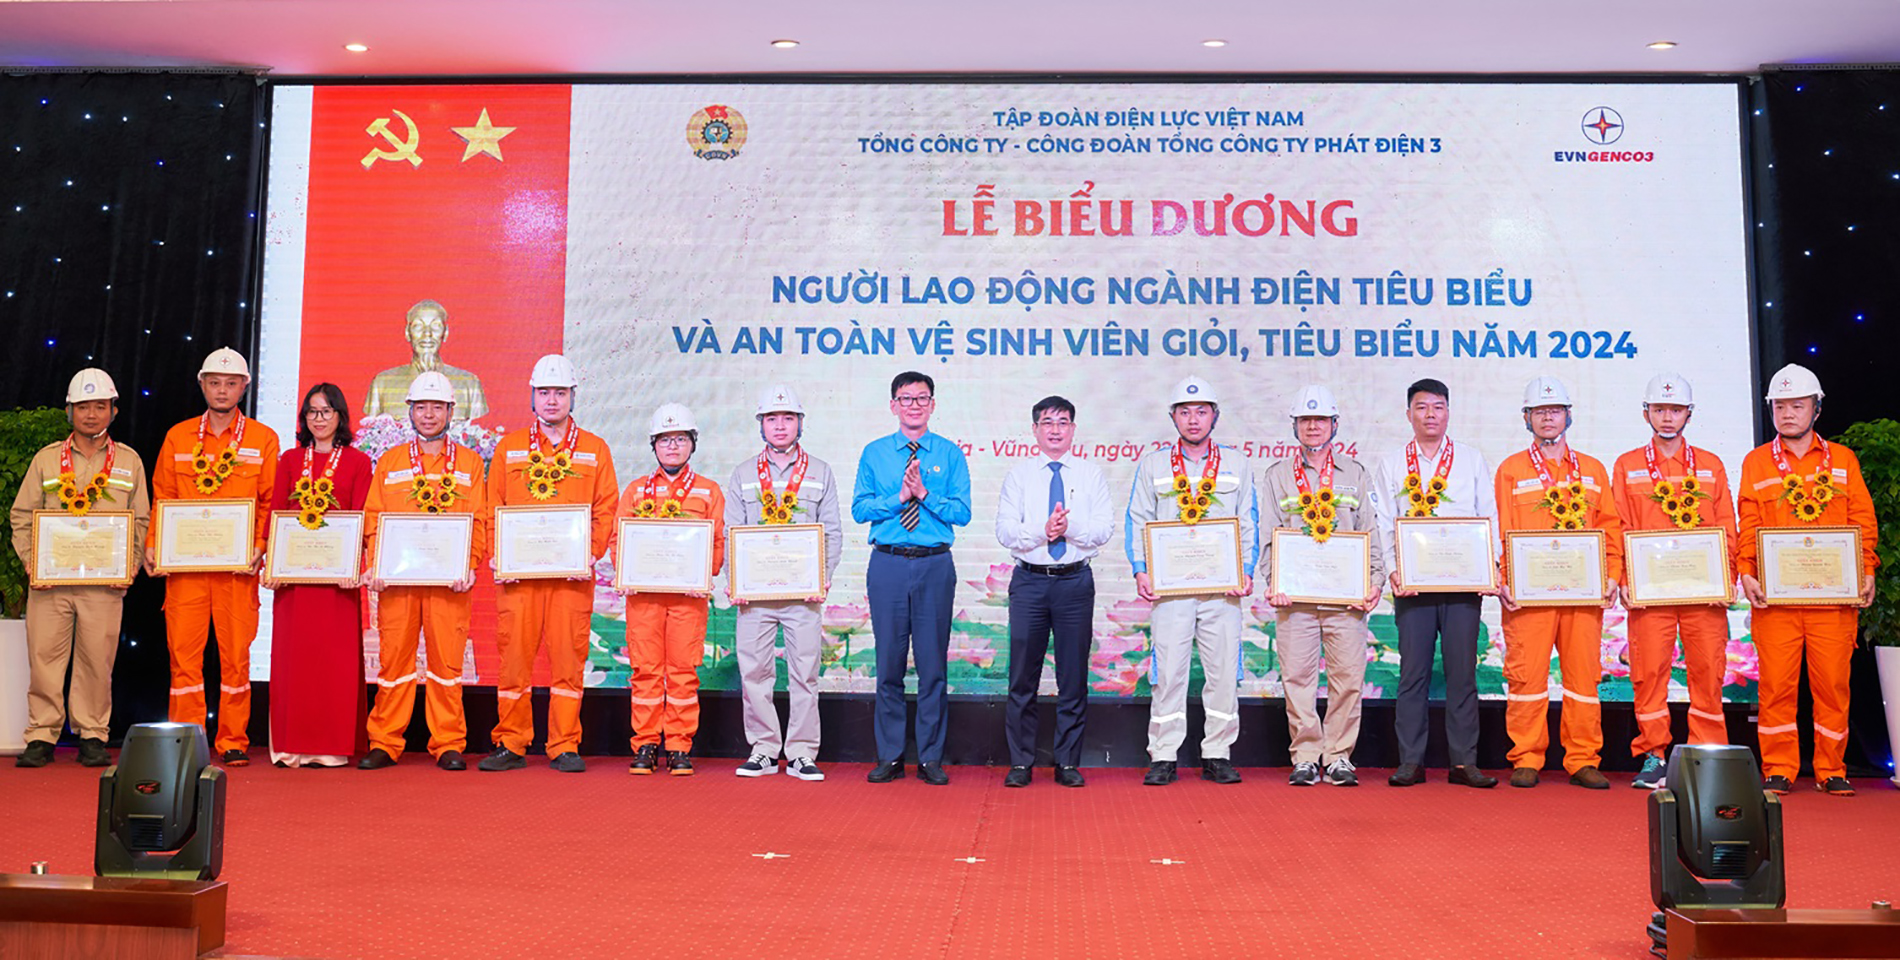 Ông Lê Văn Danh - Tổng giám đốc EVNGENCO3 và ông Vũ Quang Sáng - Chủ tịch Công đoàn Tổng Công ty trao giấy khen biểu dương Người lao động ngành Điện tiêu biểu cấp Tổng Công ty năm 2024